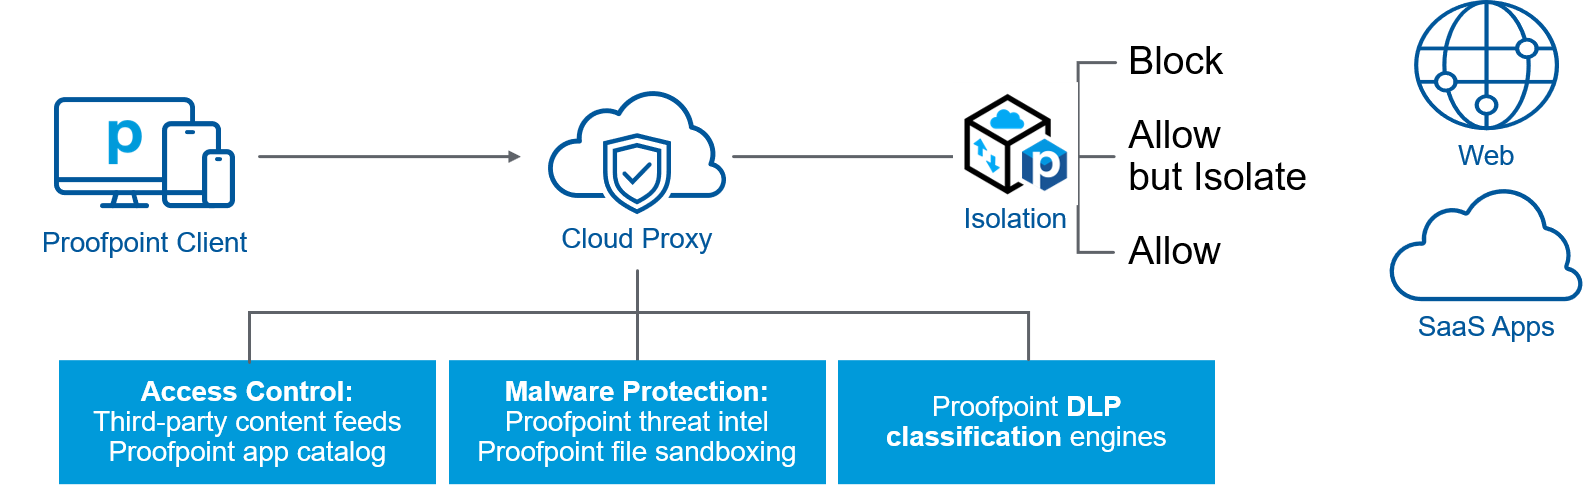 Zwischen den Endgeräten und dem Zugriff auf das Internet/SaaS-Apps wird ein Cloud-Proxy geschaltet, der Zugriffe kontrolliert, Malware abwehrt und DLP-Klassifizierung durchführt.